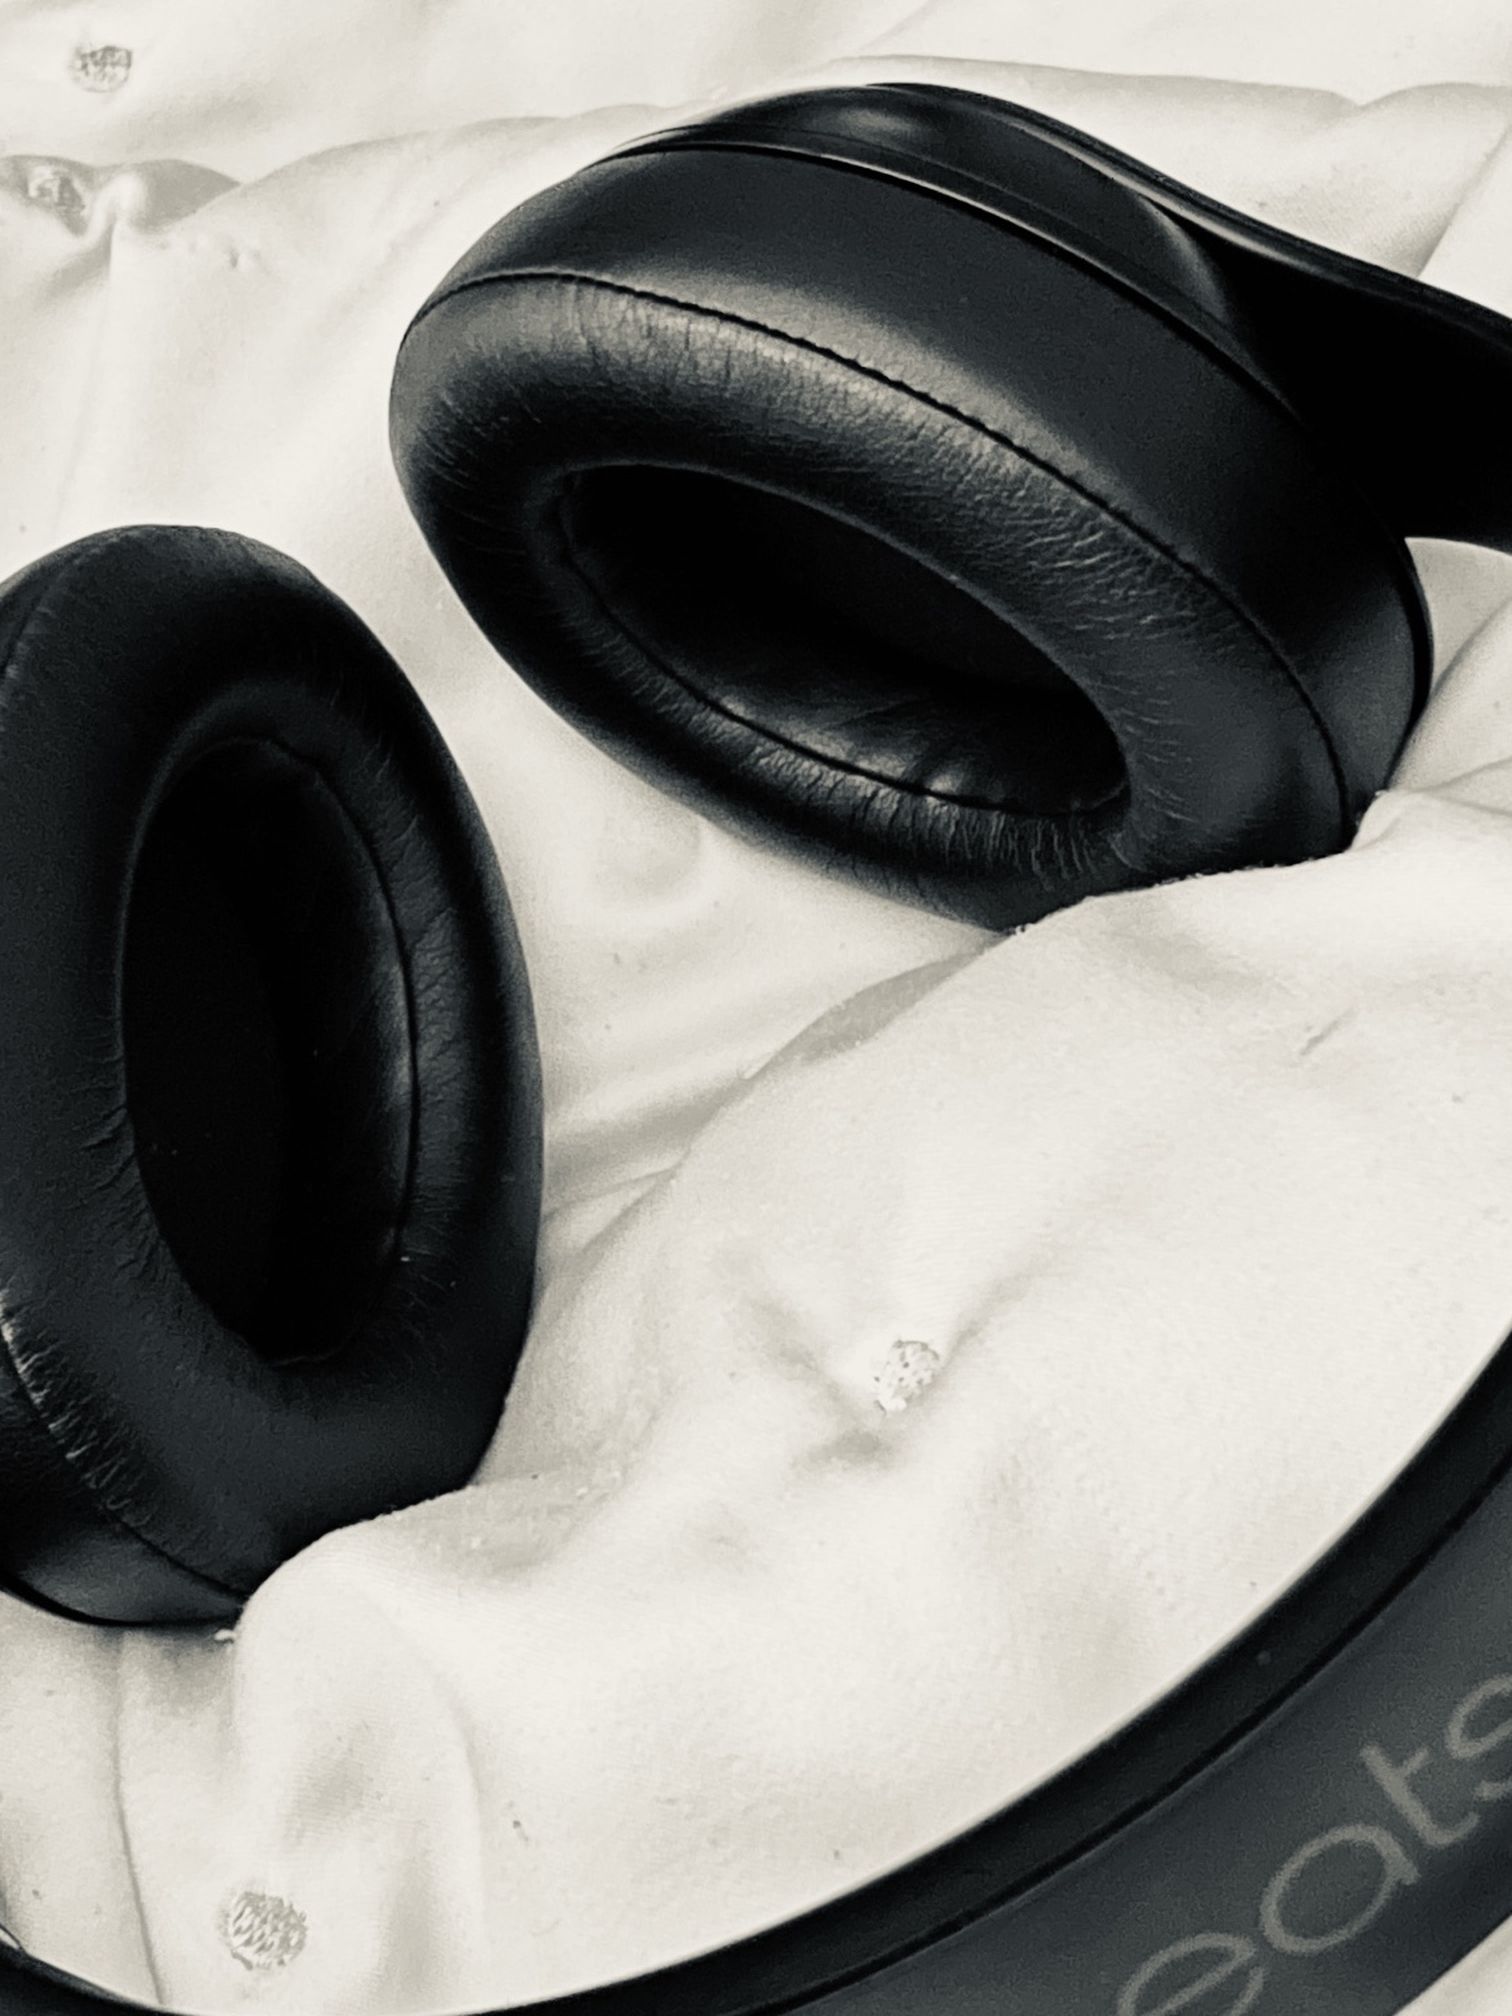 Beats Studio 3 Wireless Headphones (Black)